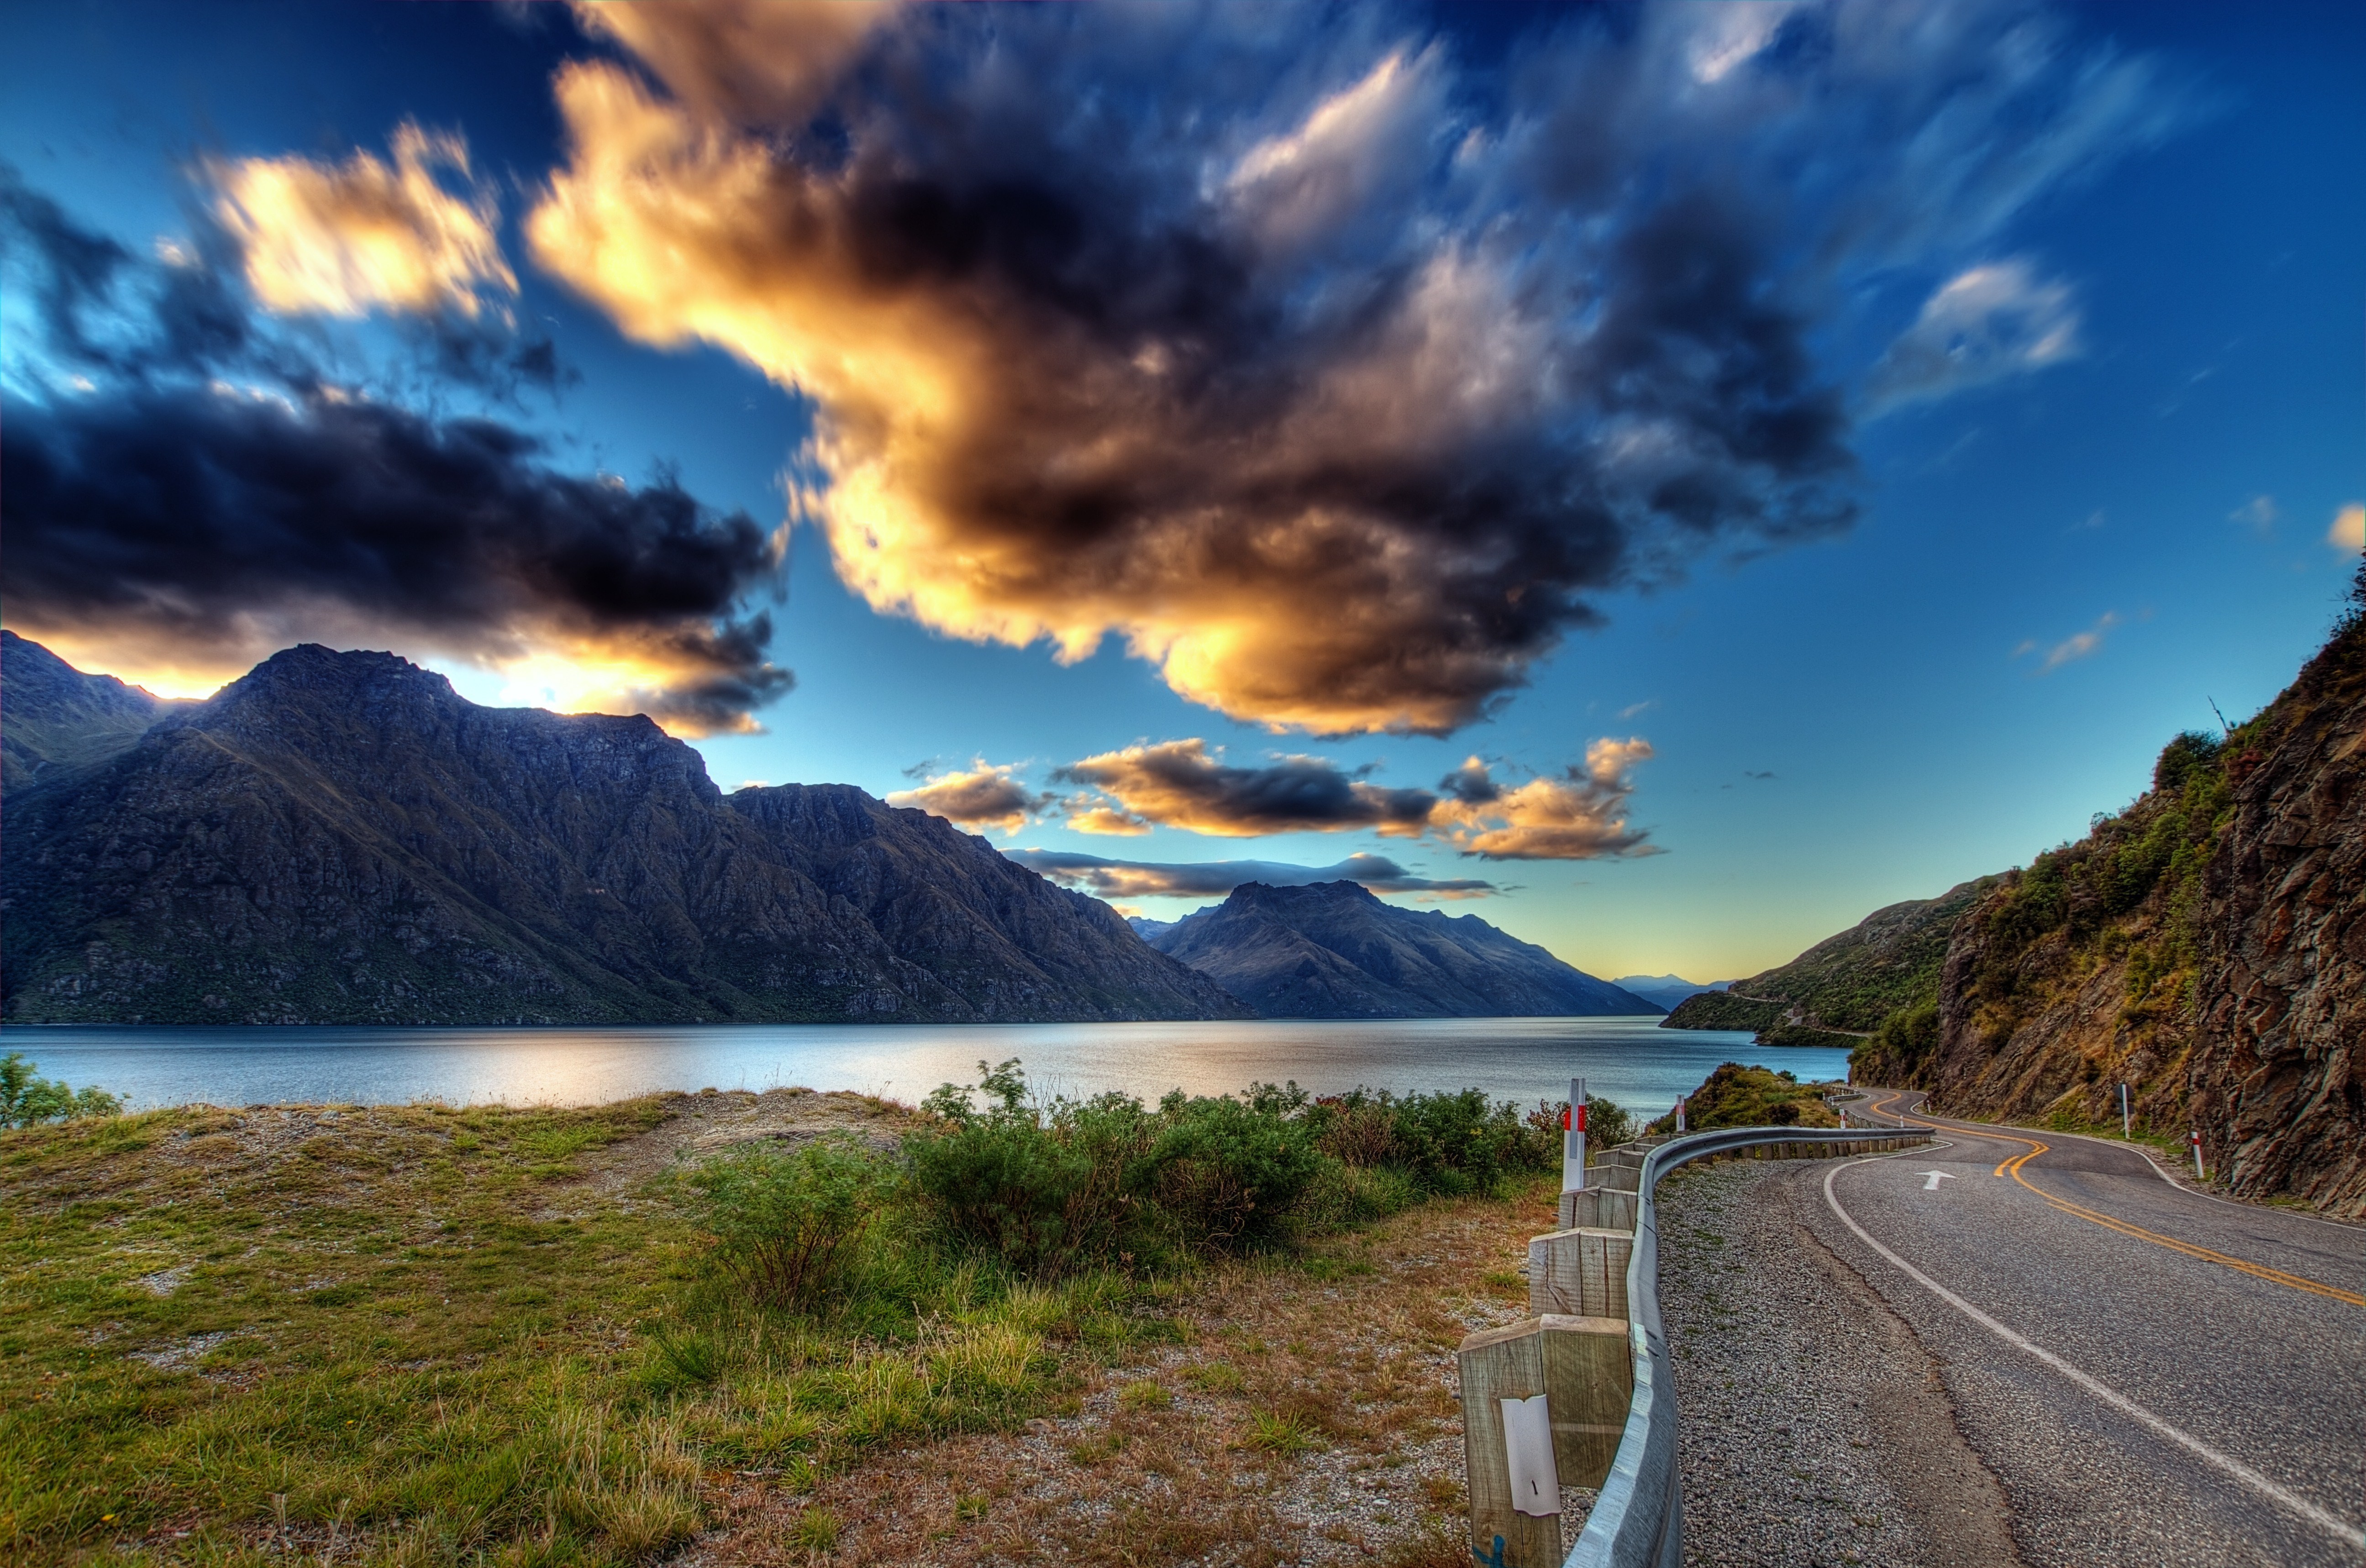 Big jpg image. Озеро Текапо в новой Зеландии. Красивый пейзаж. Крутые пейзажи. Пейзаж горы.